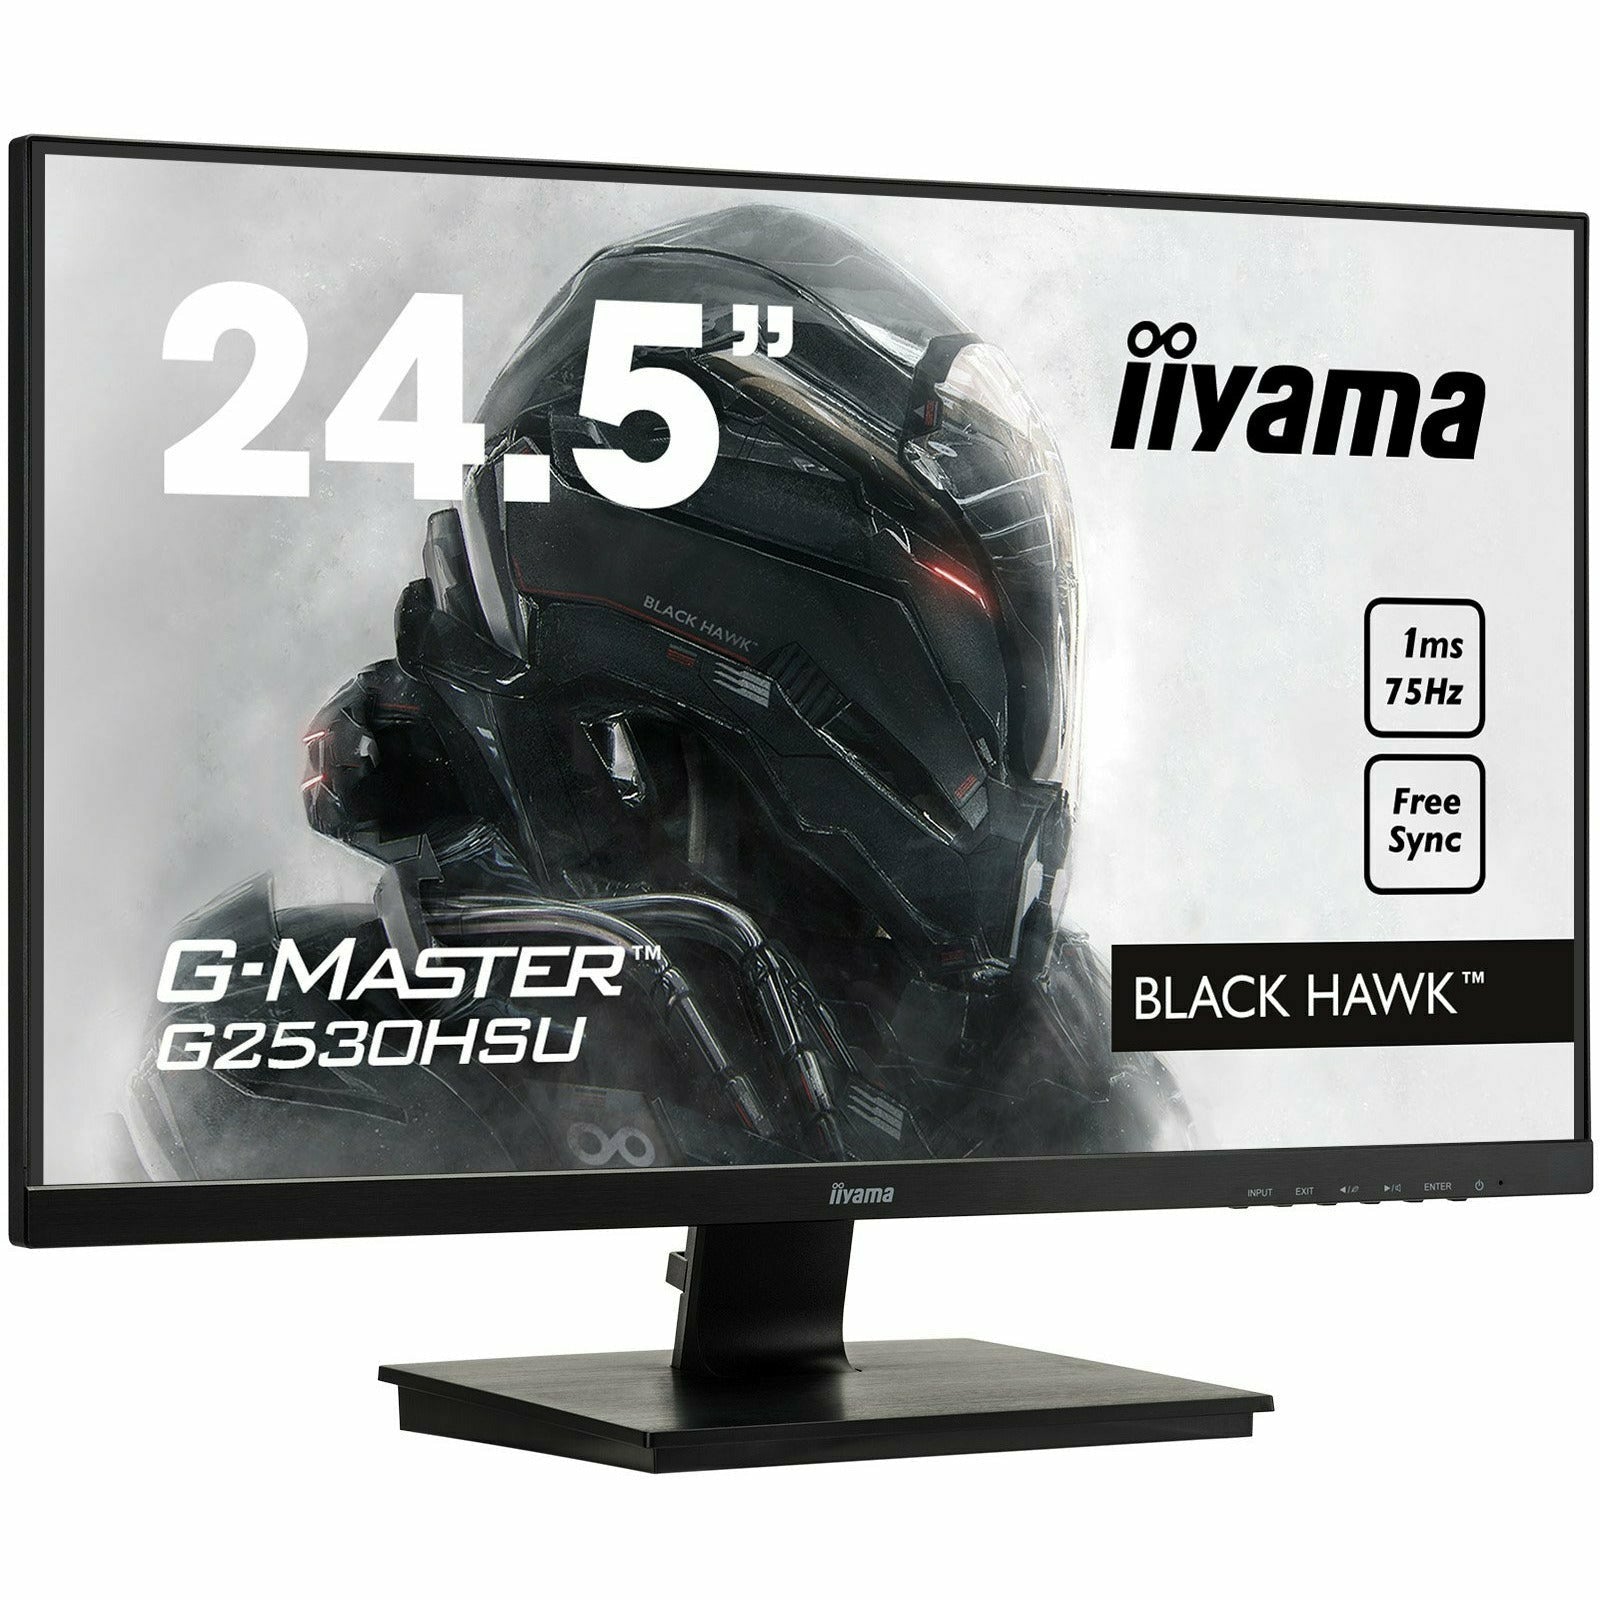 Light Gray iiyama G-Master G2530HSU-B1 25" Black Hawk Gaming Monitor